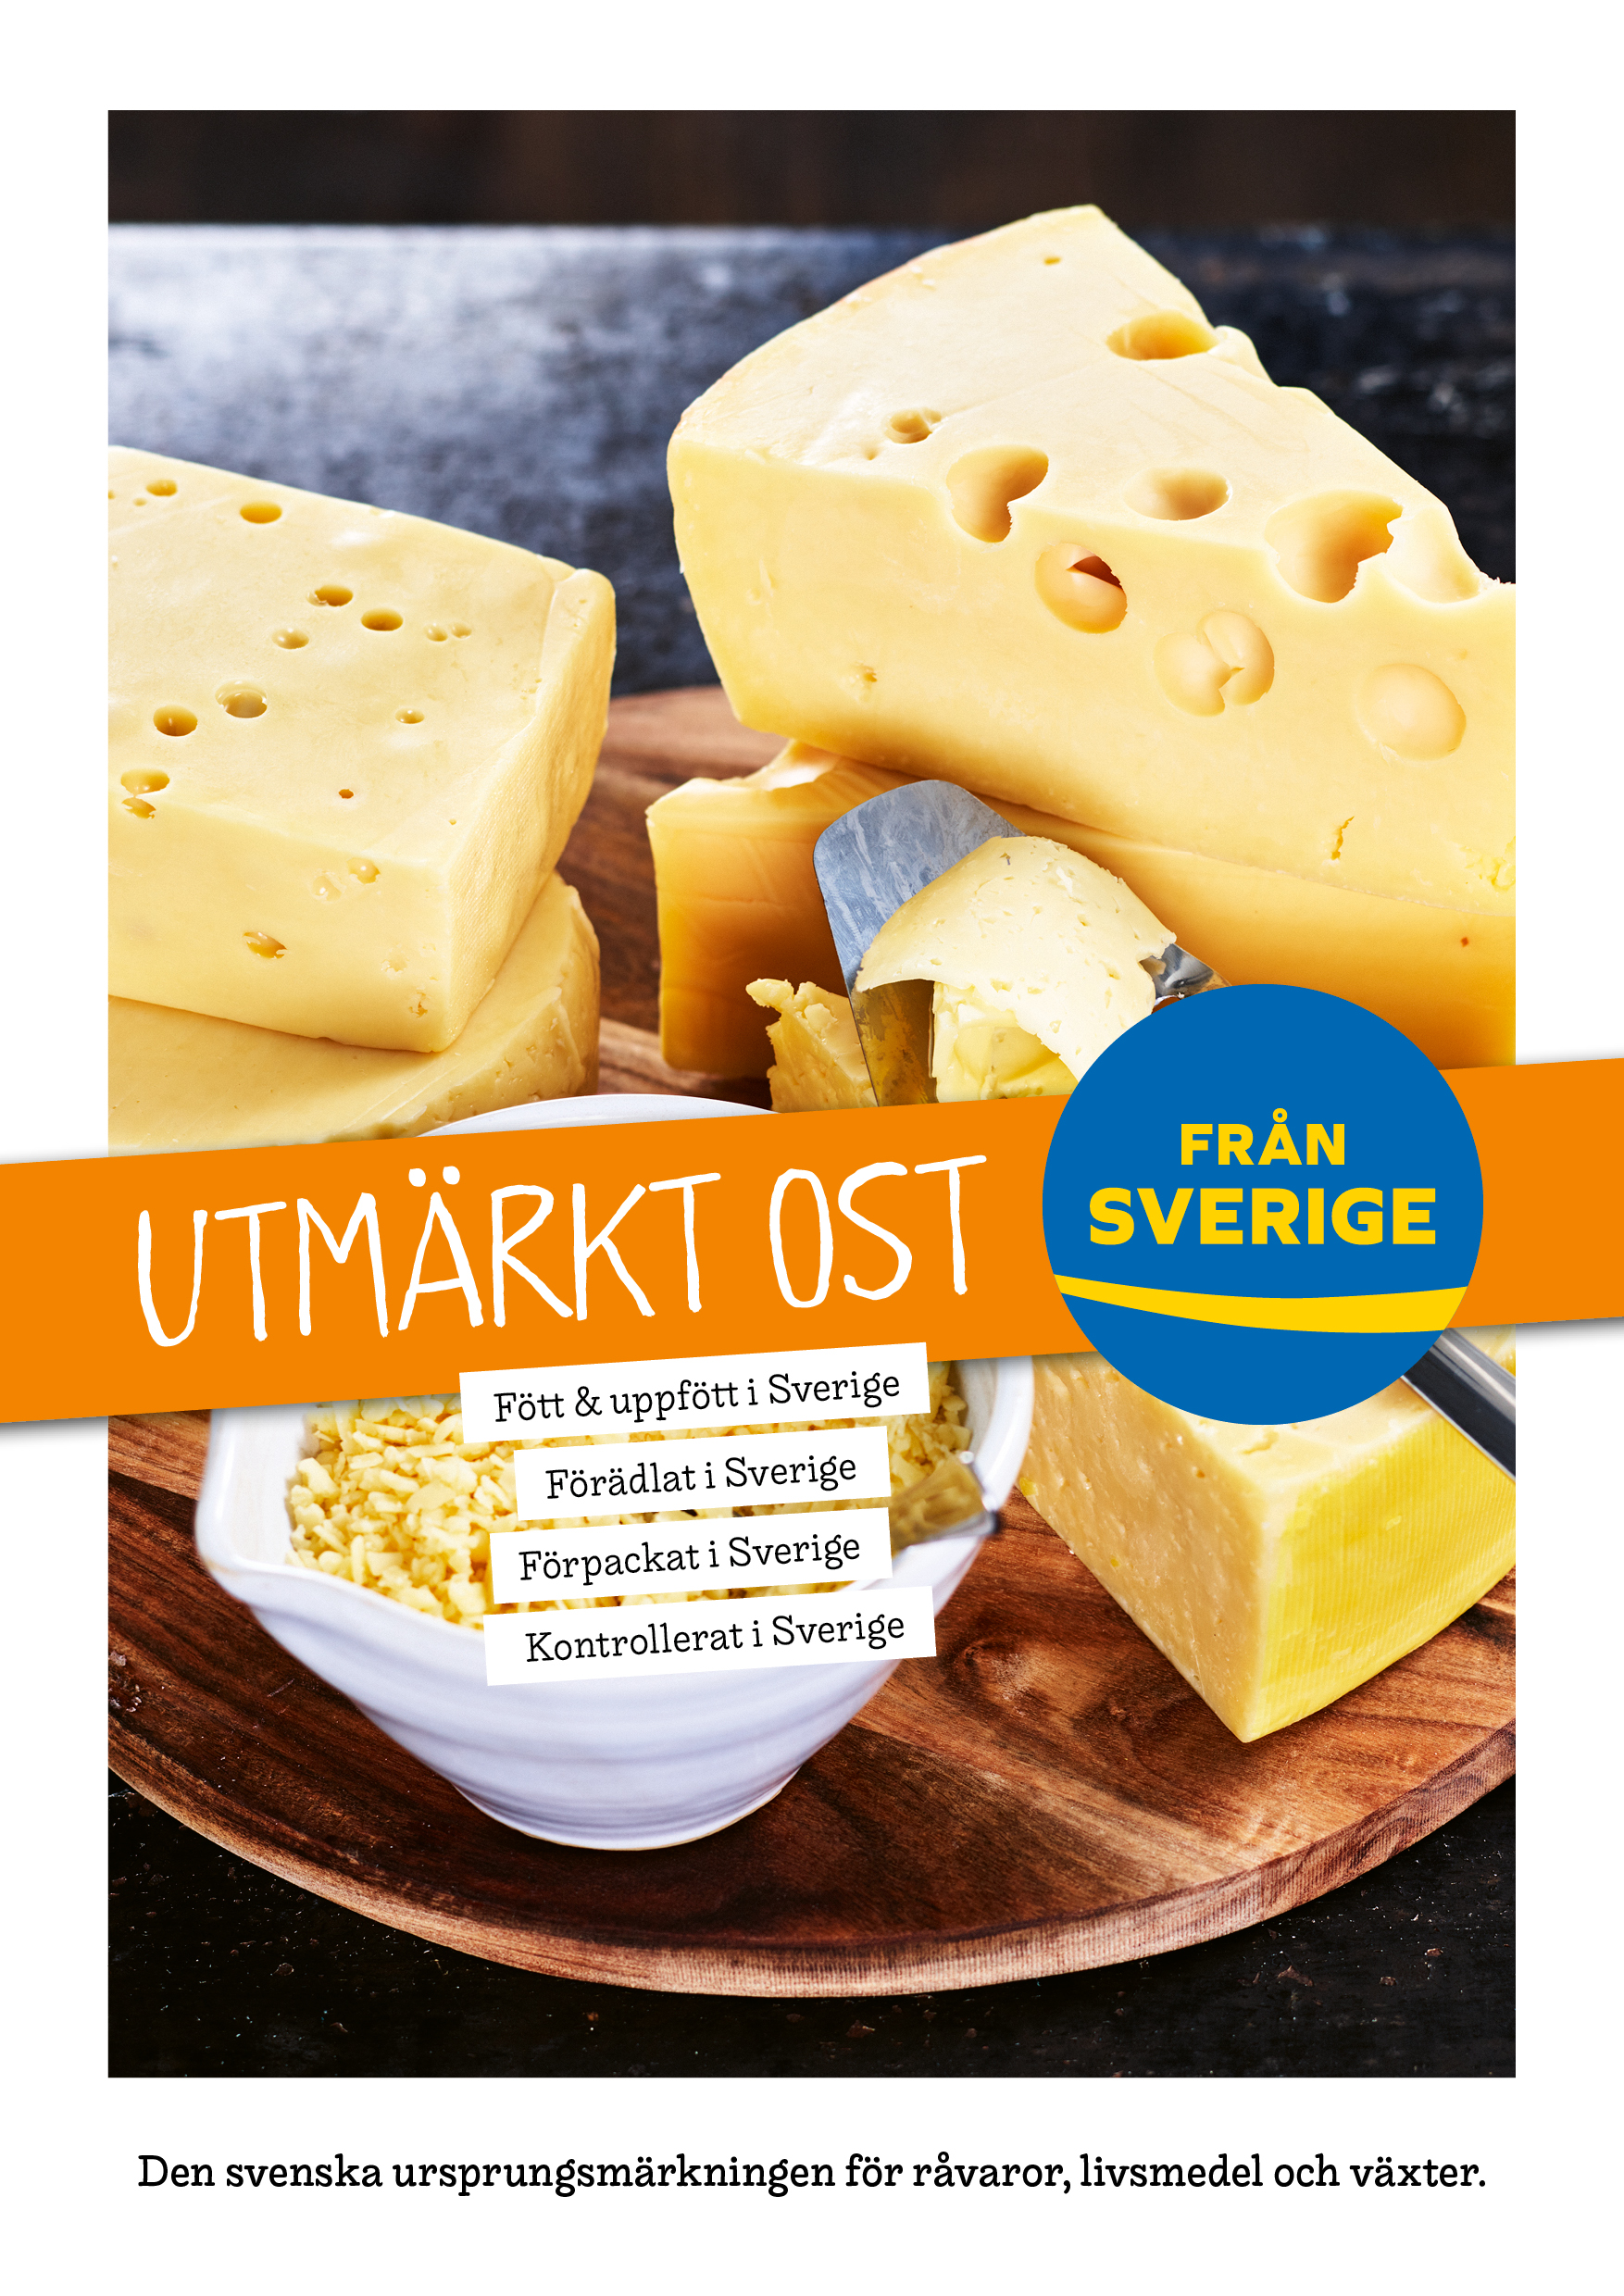 Utmärkt ost Från Sverige